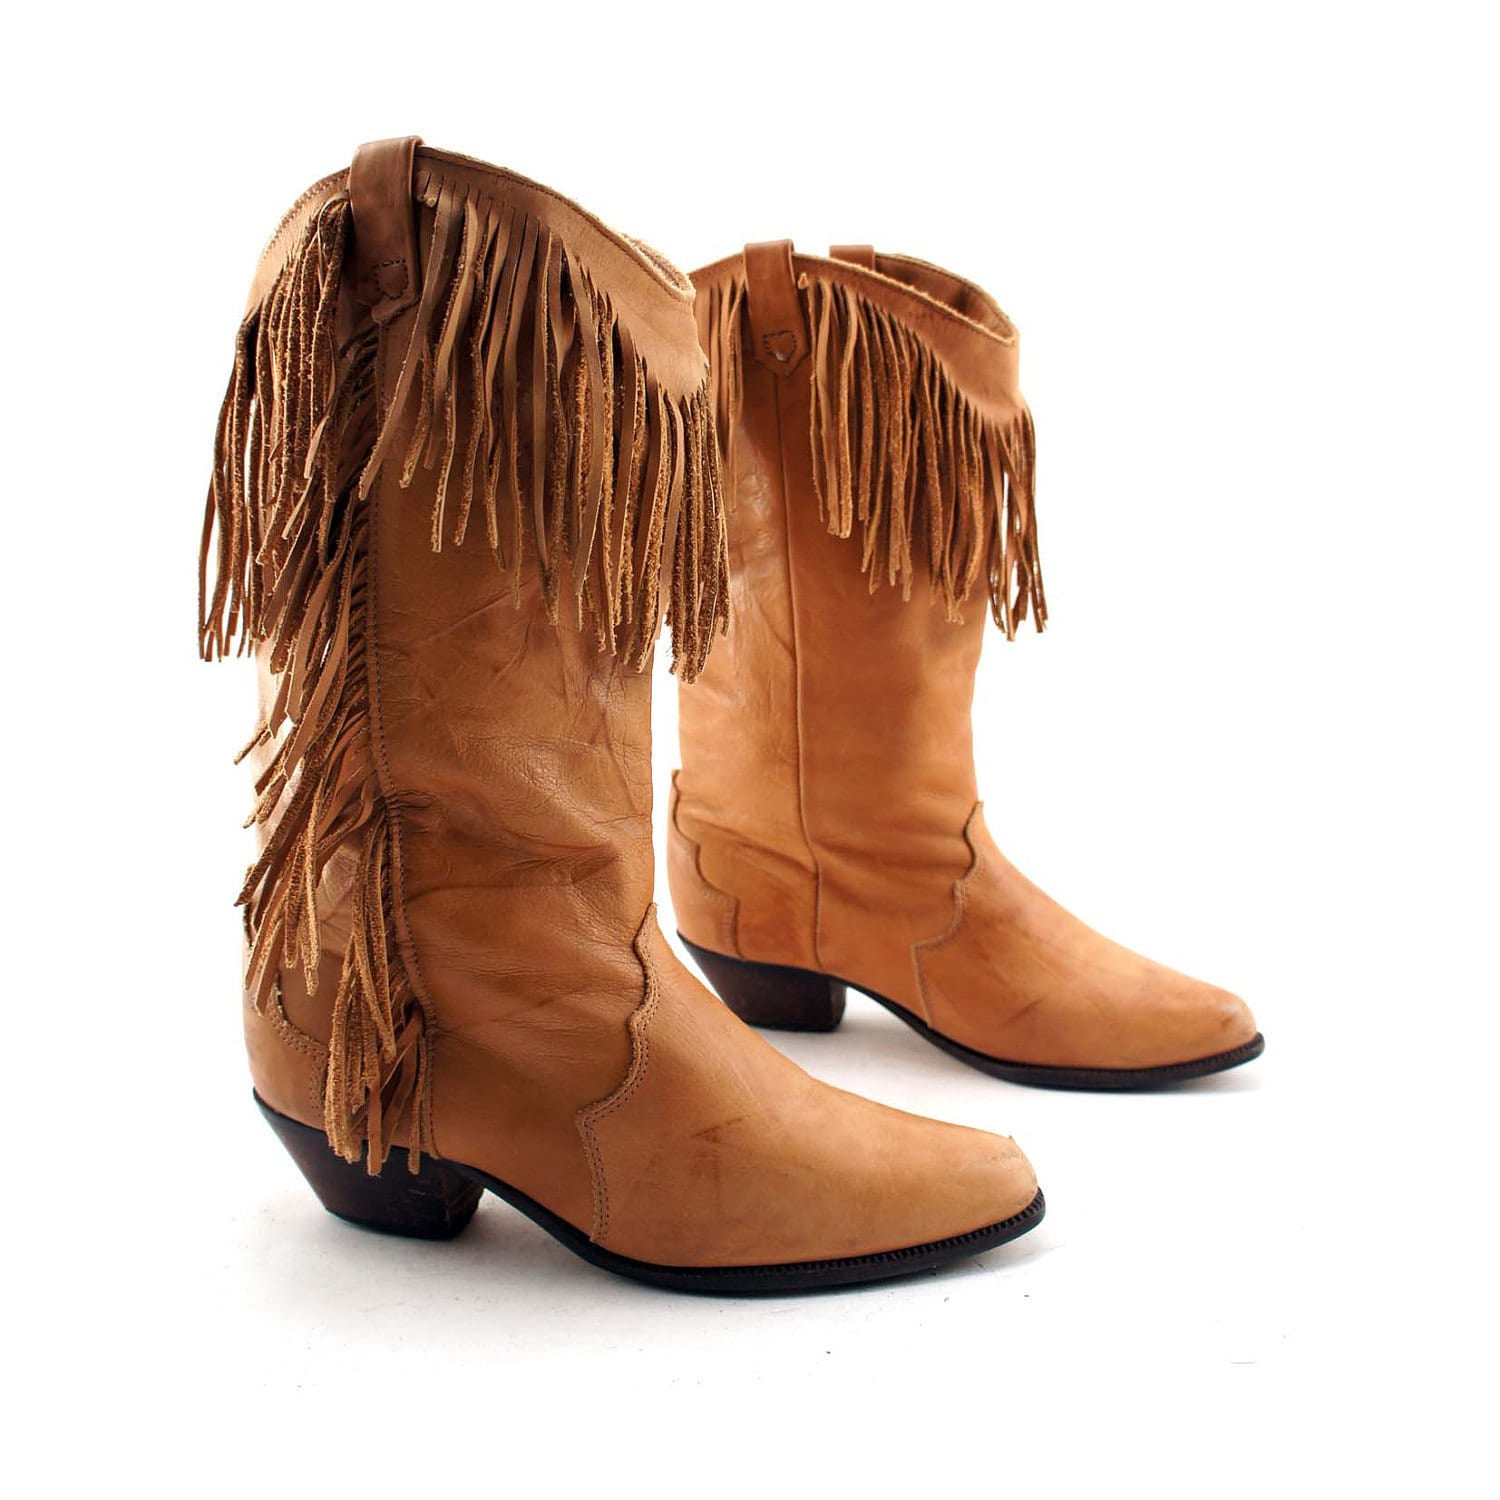 BLACK FRIDAY / Boho Fringe Cowboy Boots: Camel Brown Leather